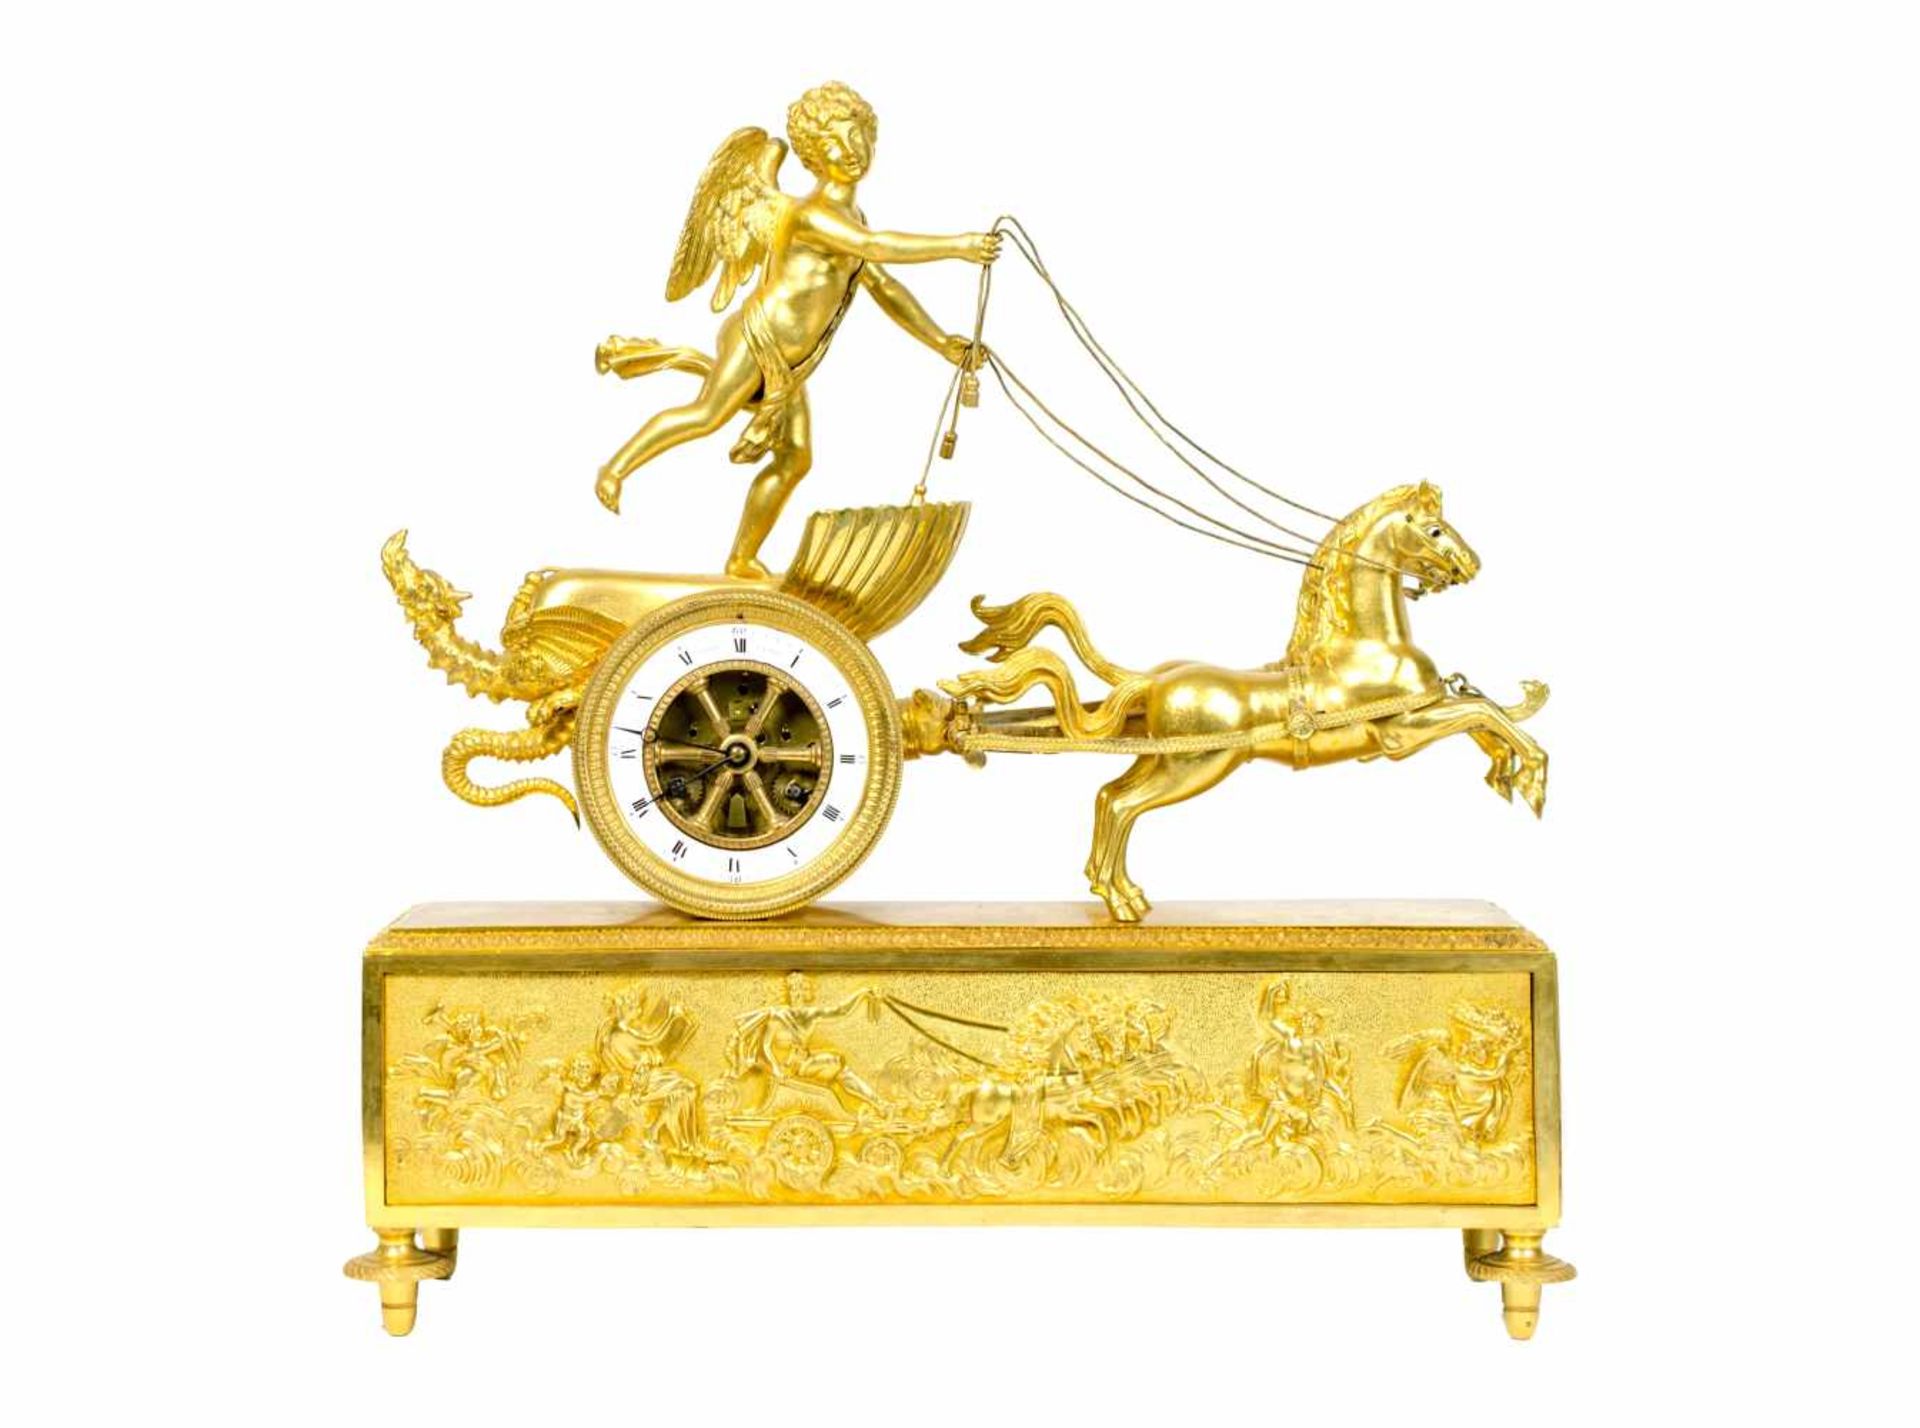 Pendule mit Amor im Streitwagen Frankreich, Chopin, Paris, um 1810, Bronze, feuervergoldet,